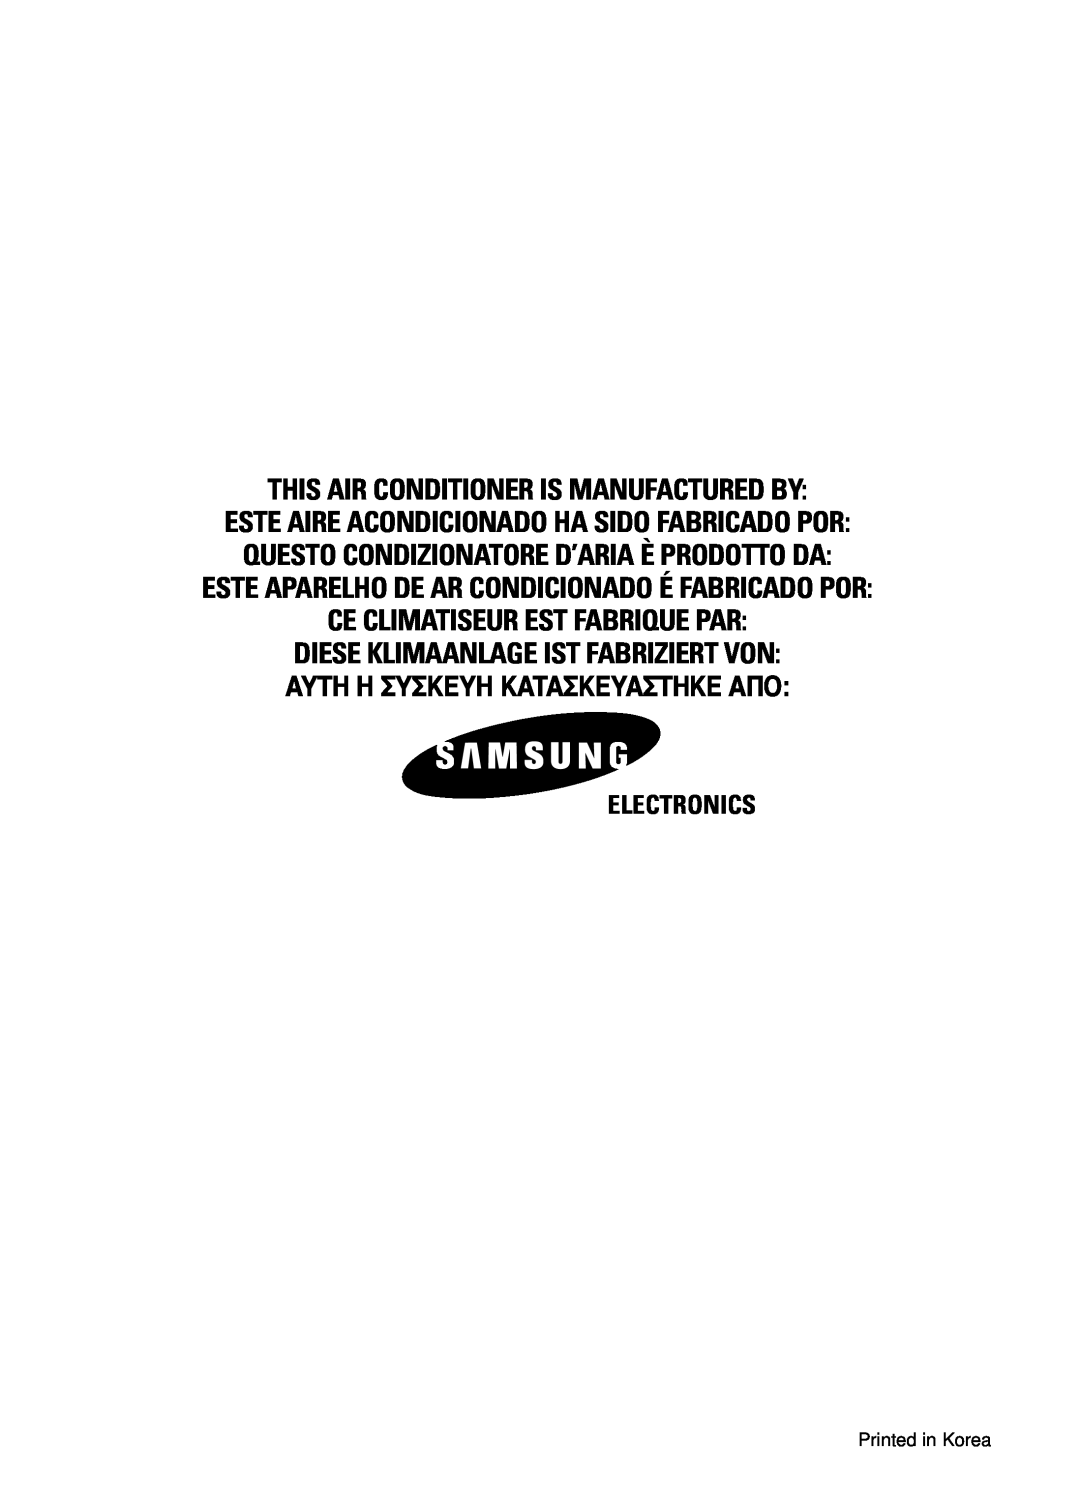 Samsung AD18B1(B2)(C1)(C2)E09 This Air Conditioner Is Manufactured By, Este Aparelho De Ar Condicionado É Fabricado Por 